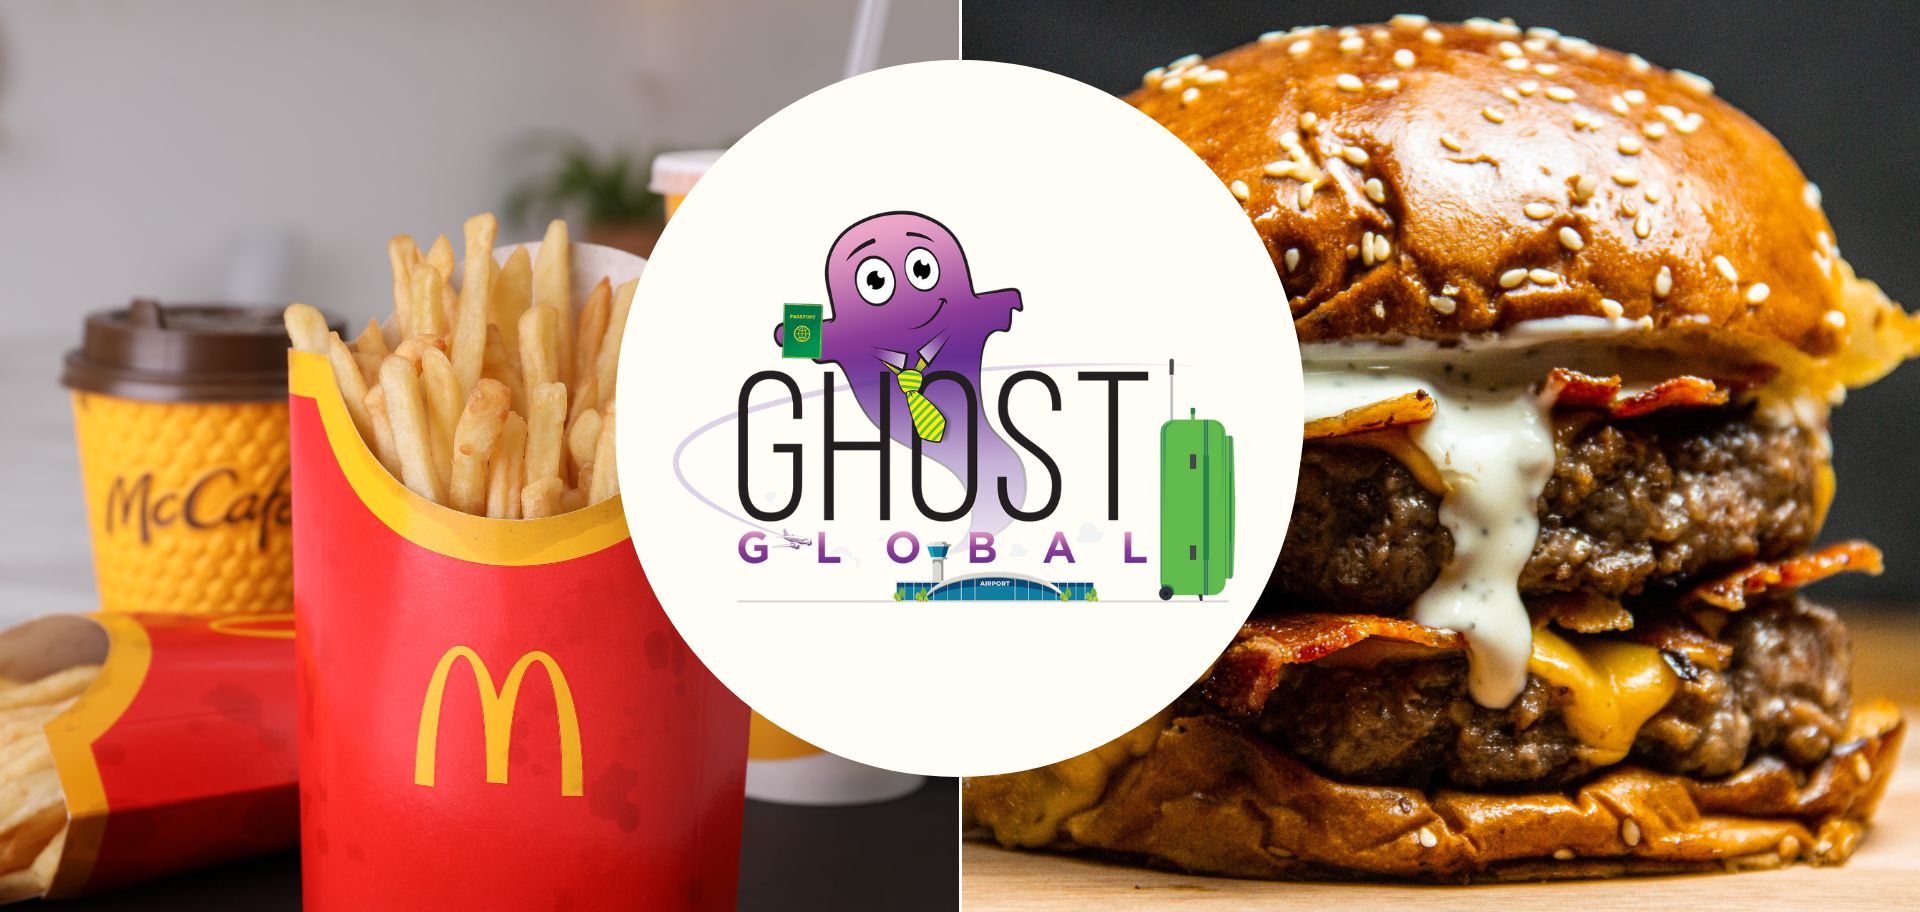 Ghost Global: Burger wars